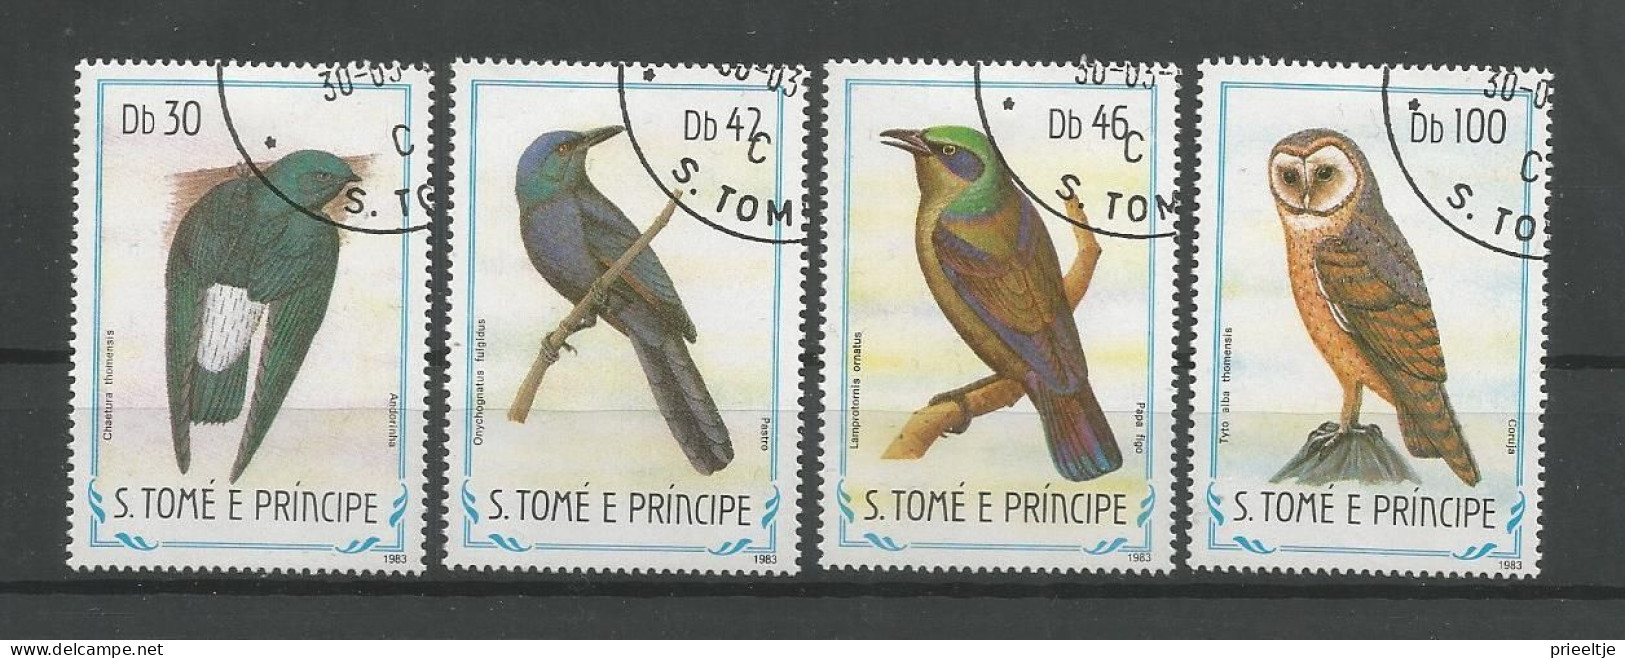 St Tome E Principe 1983 Birds Y.T. 792/795 (0) - São Tomé Und Príncipe